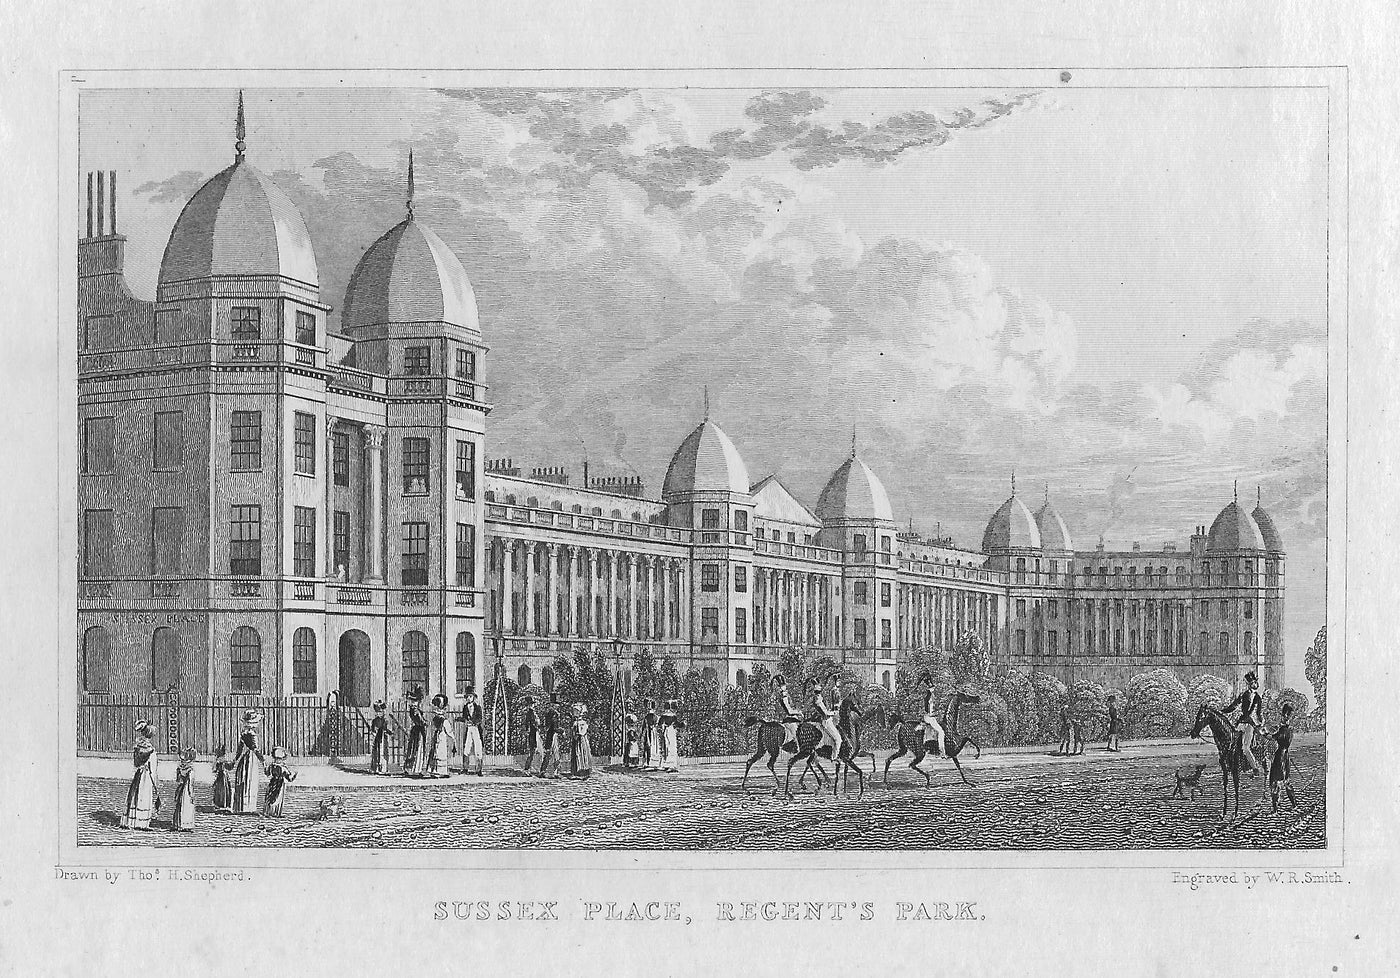 Sussex Place Regent's Park London antique print 1830